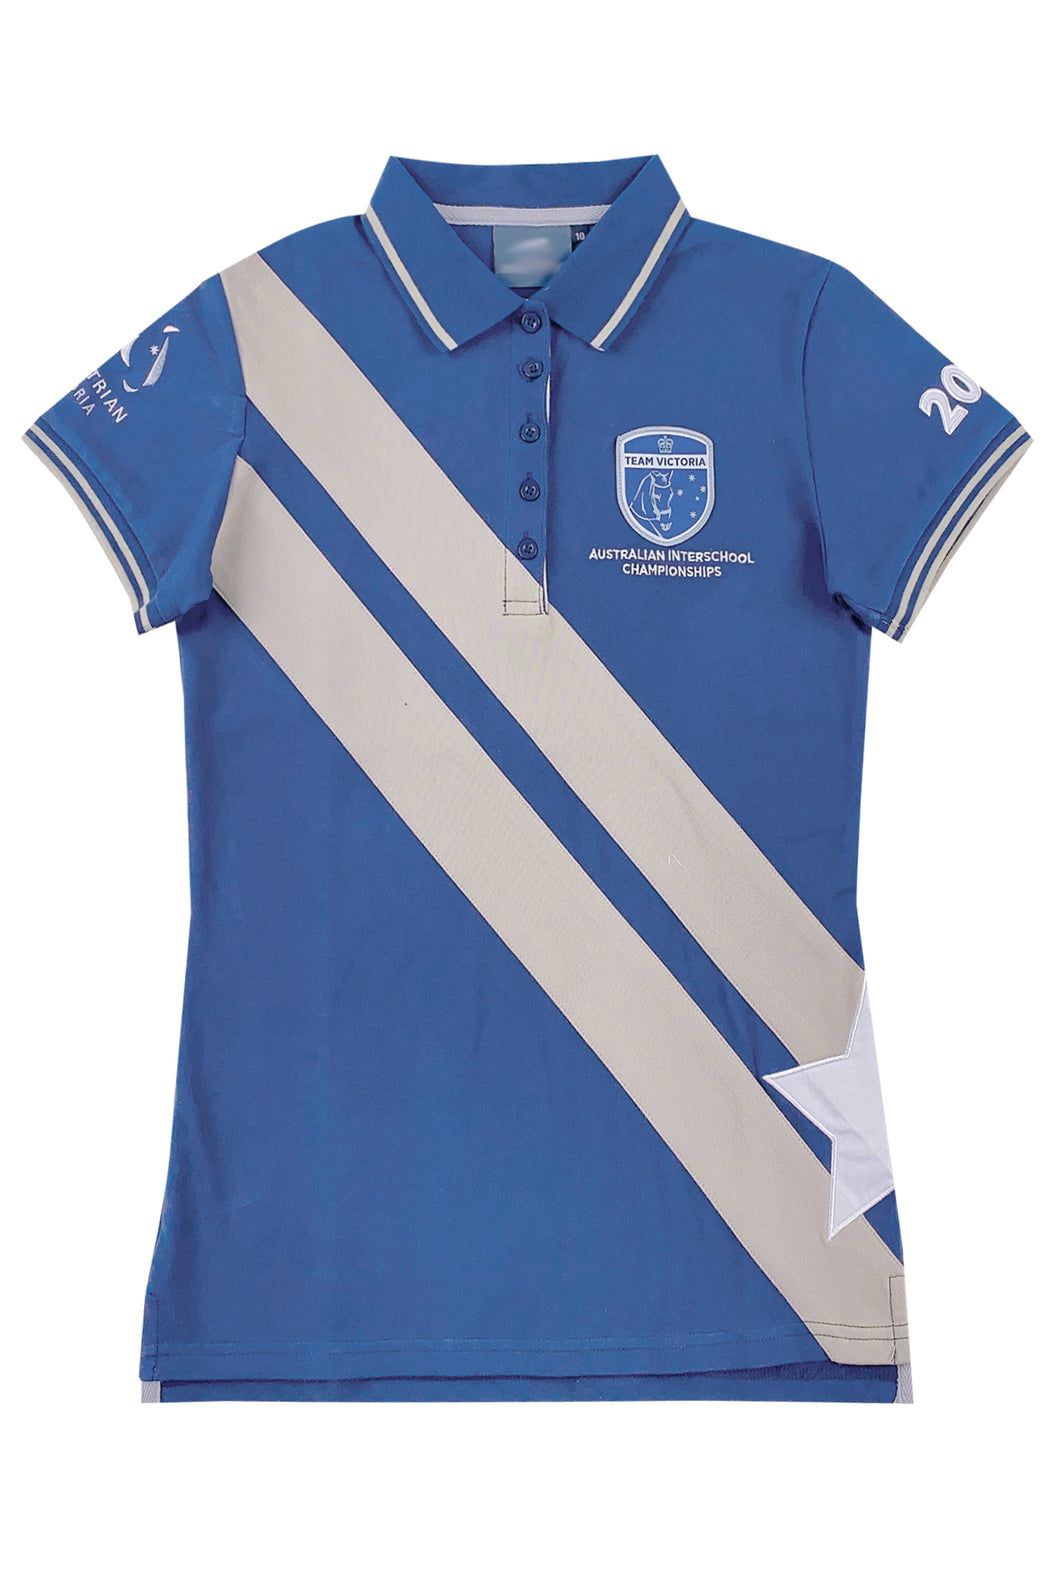 自訂寶藍色女裝短袖Polo恤   設計撞色間條貼布   P1554